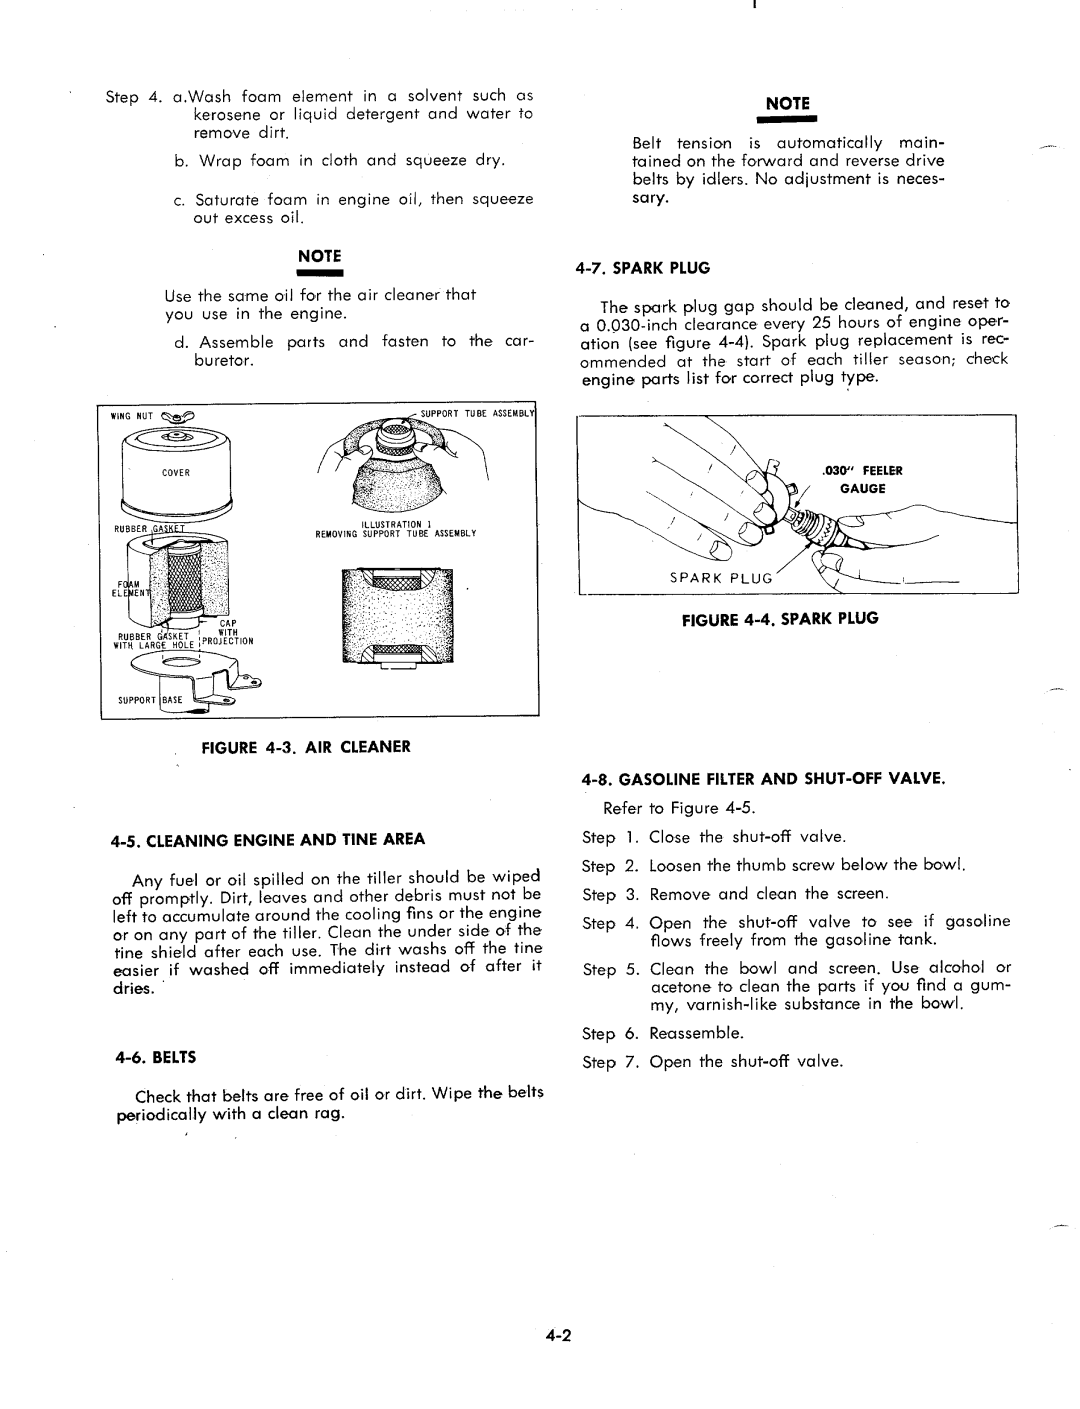 MTD 1850 manual 